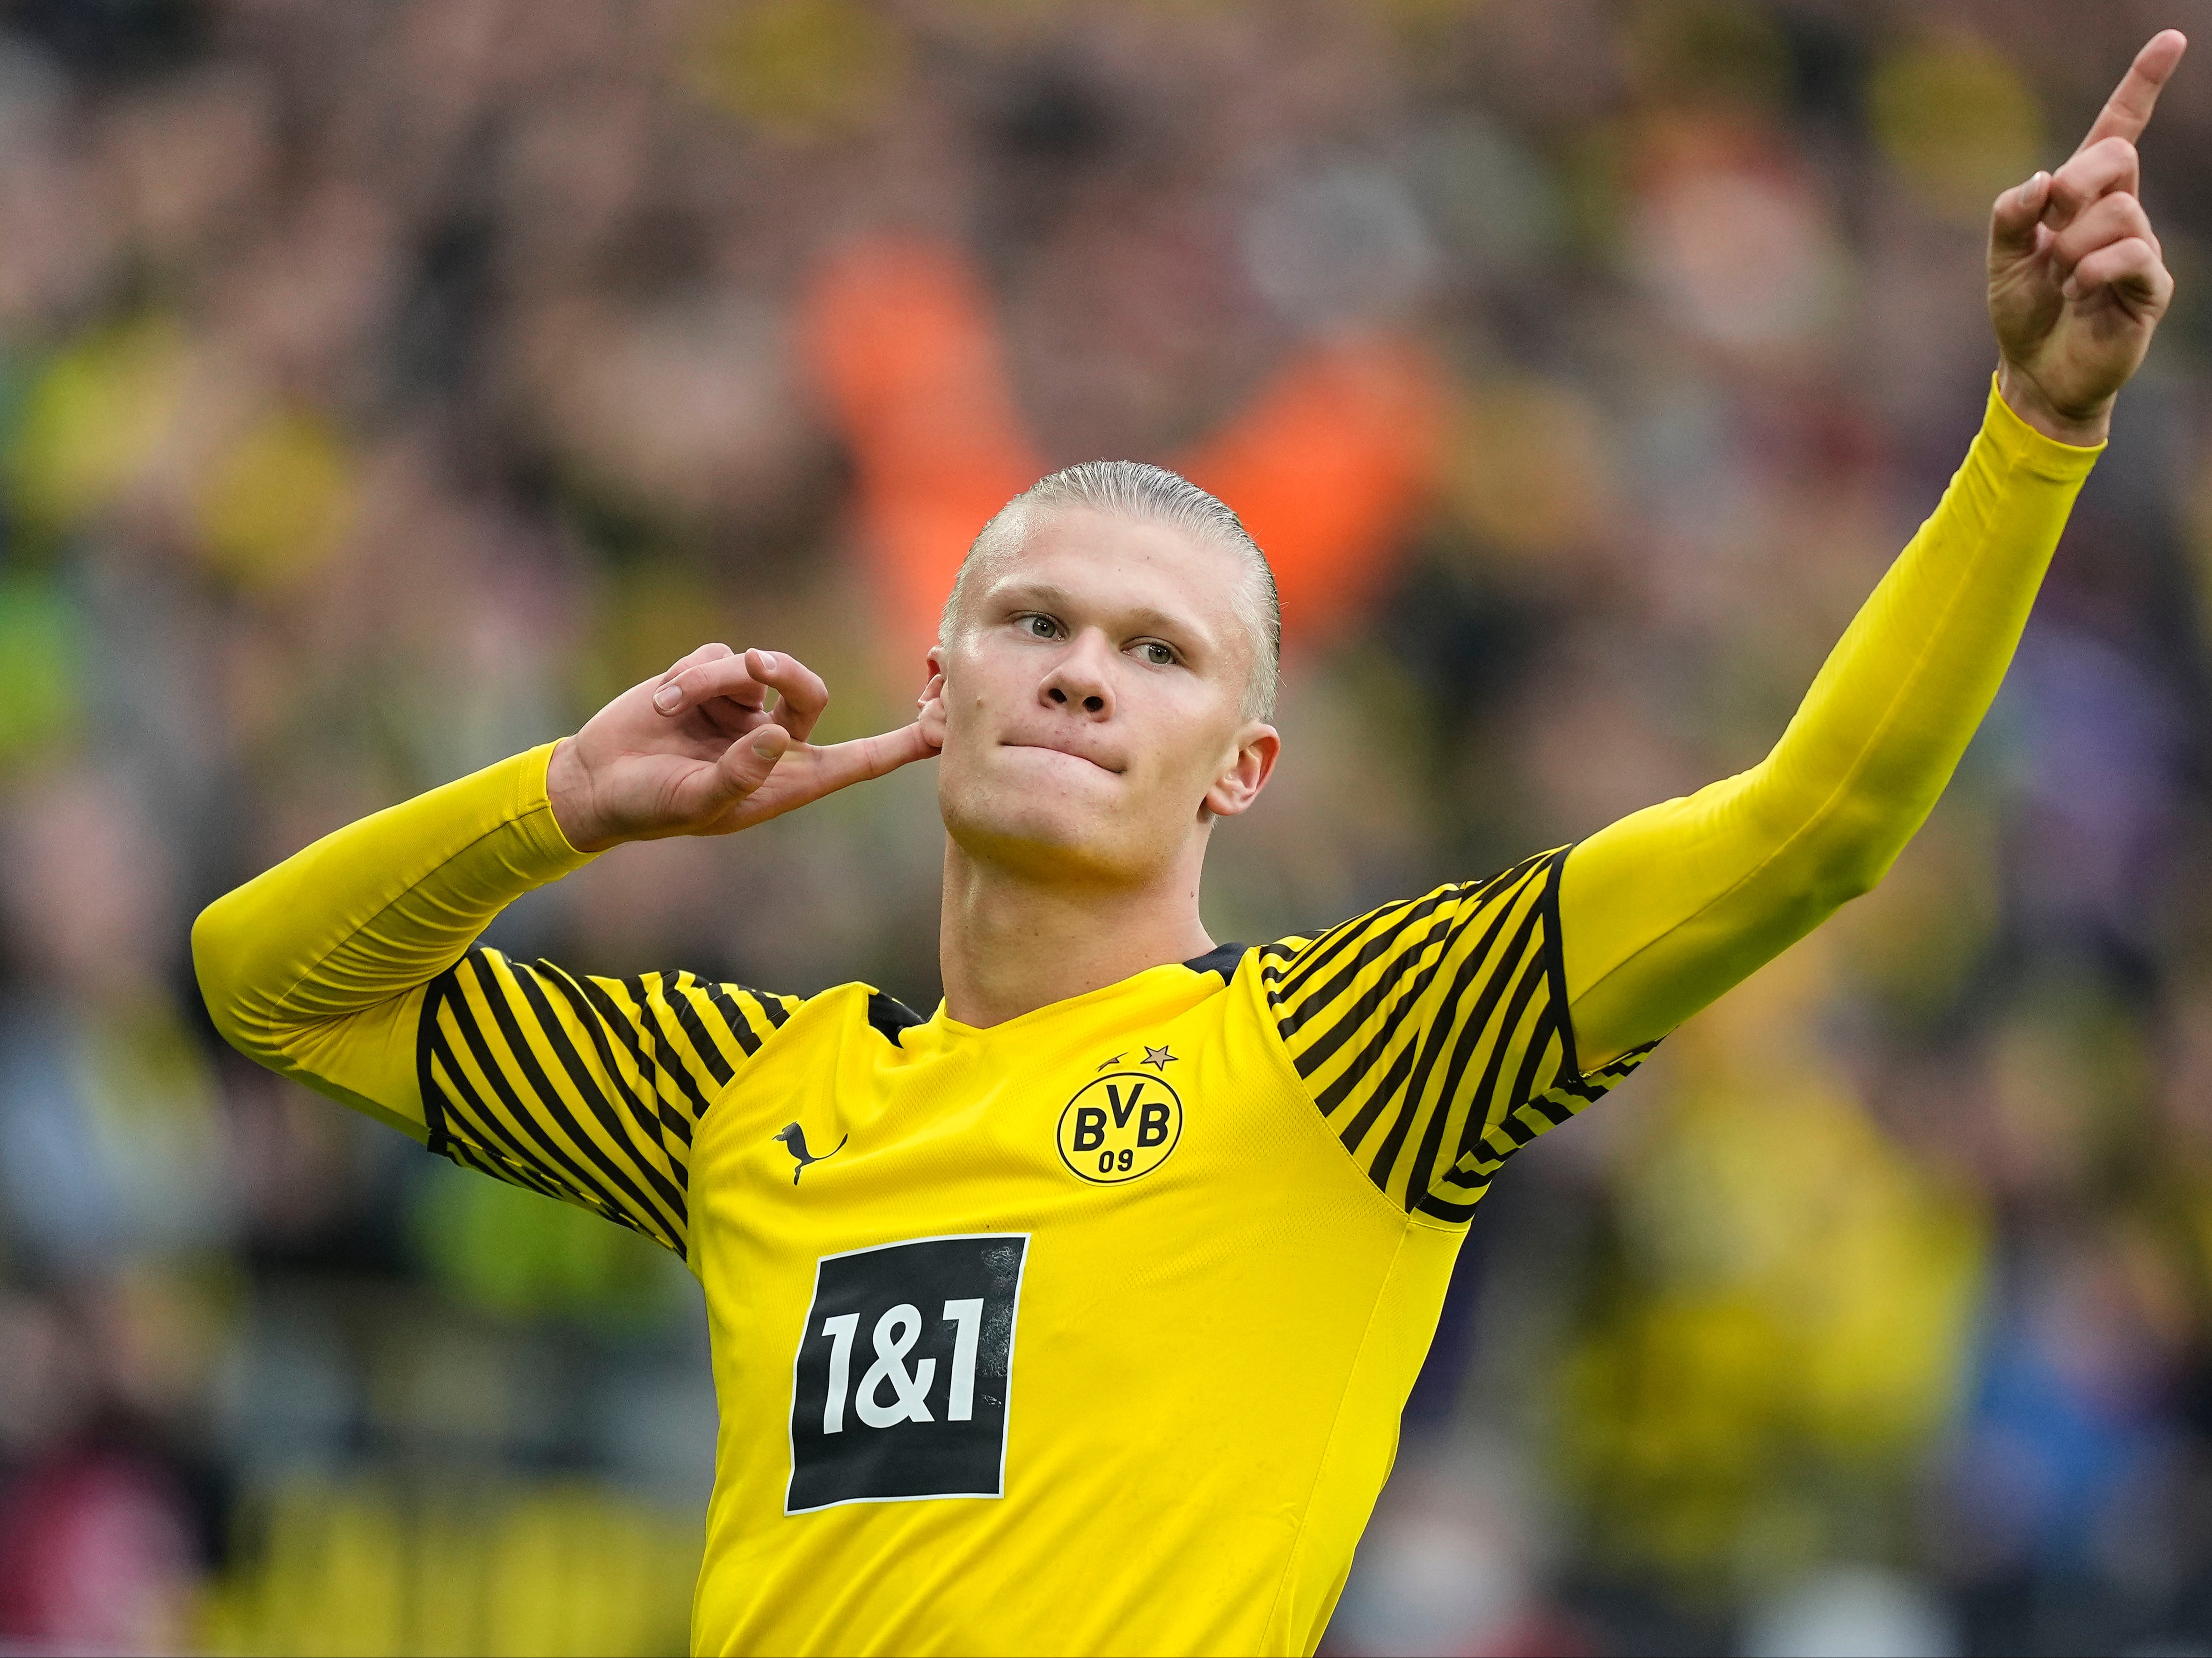 Haaland has scored 85 goals in 88 games at Dortmund